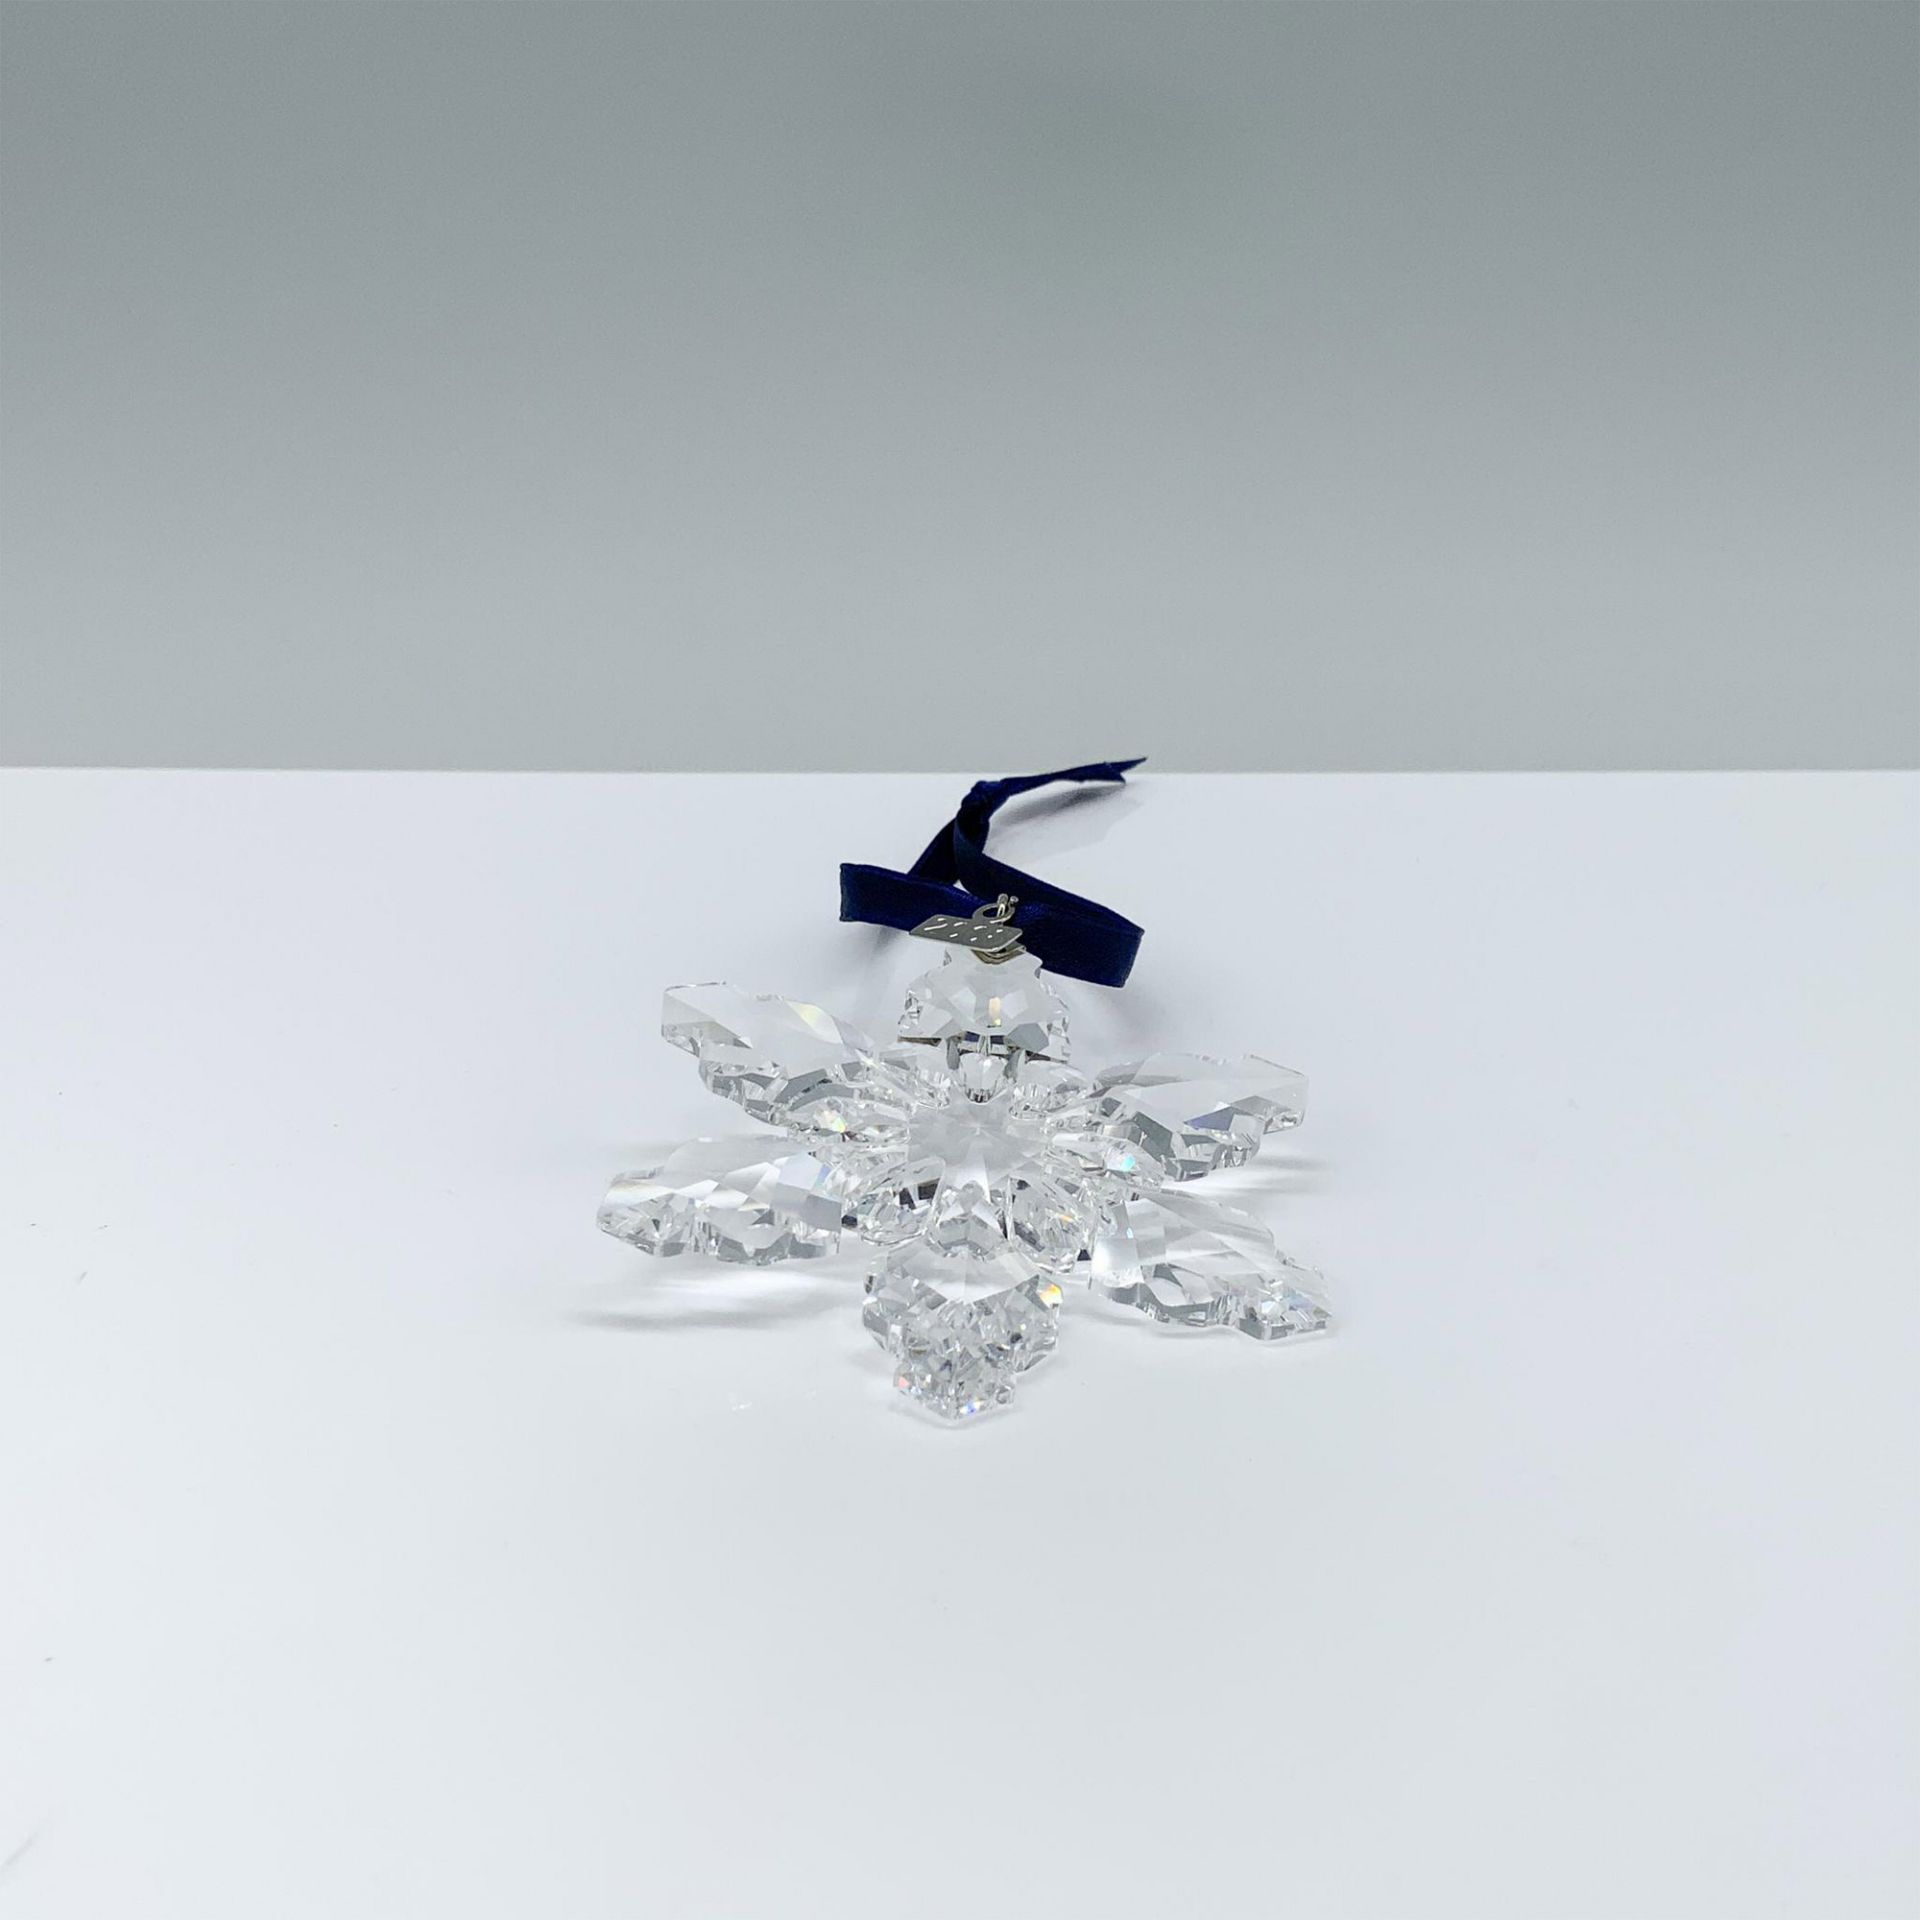 Swarovski Crystal Christmas Ornament 2008 Snowflake - Image 3 of 4